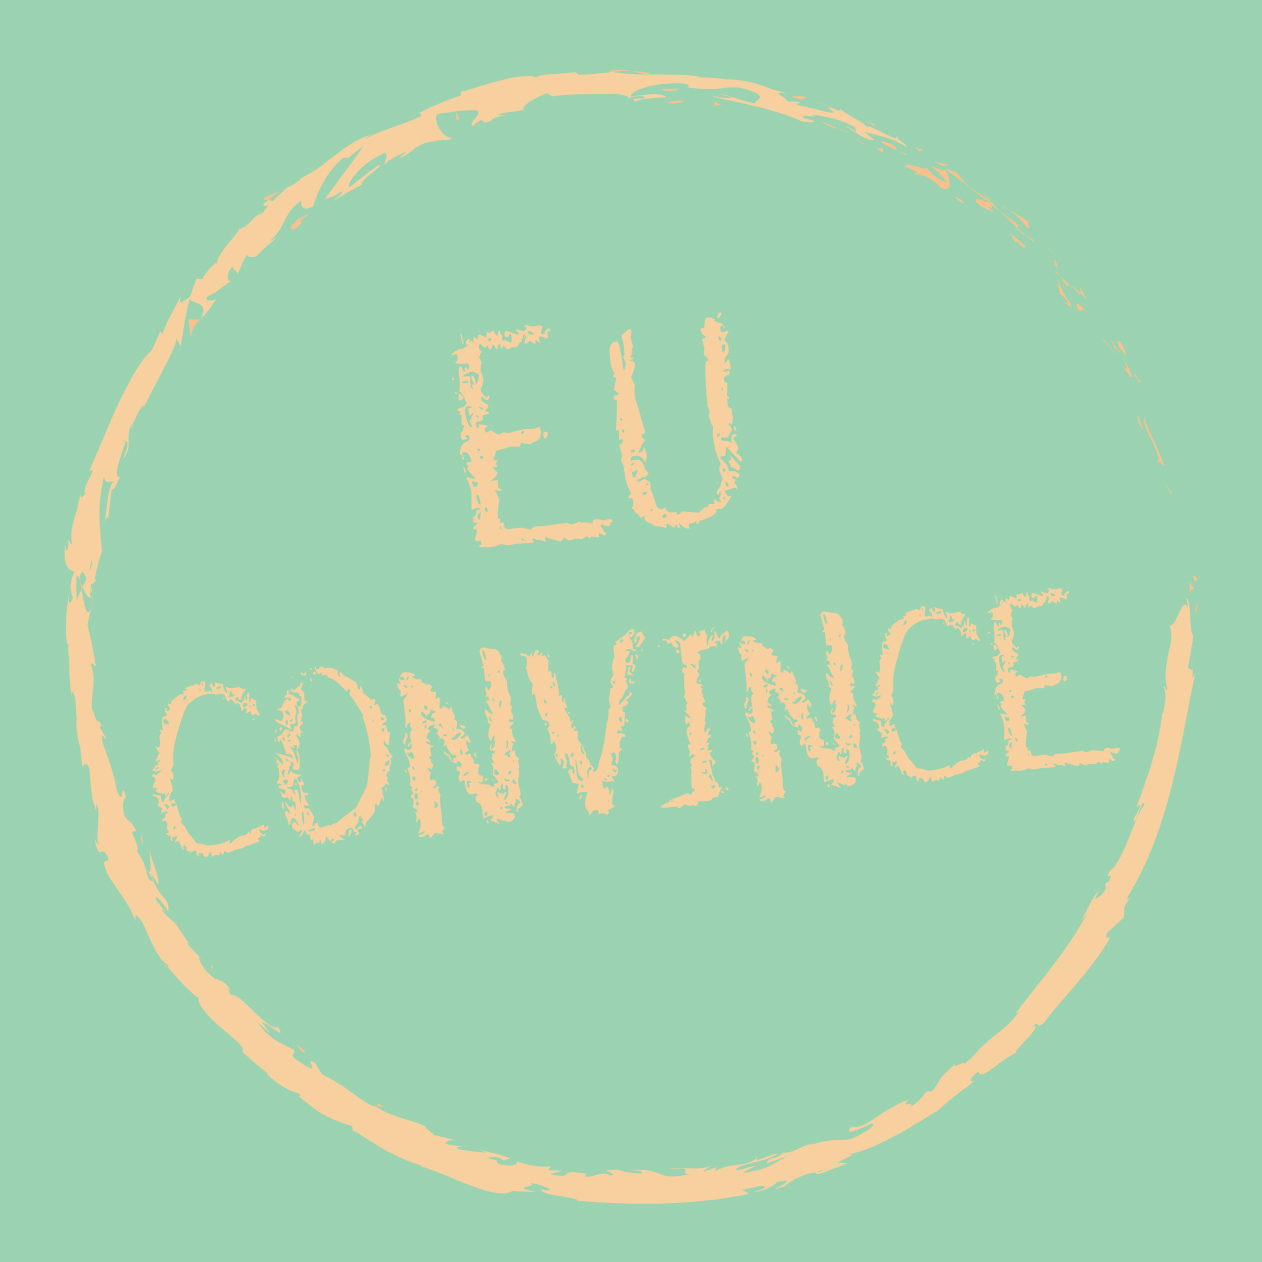 EU Convince